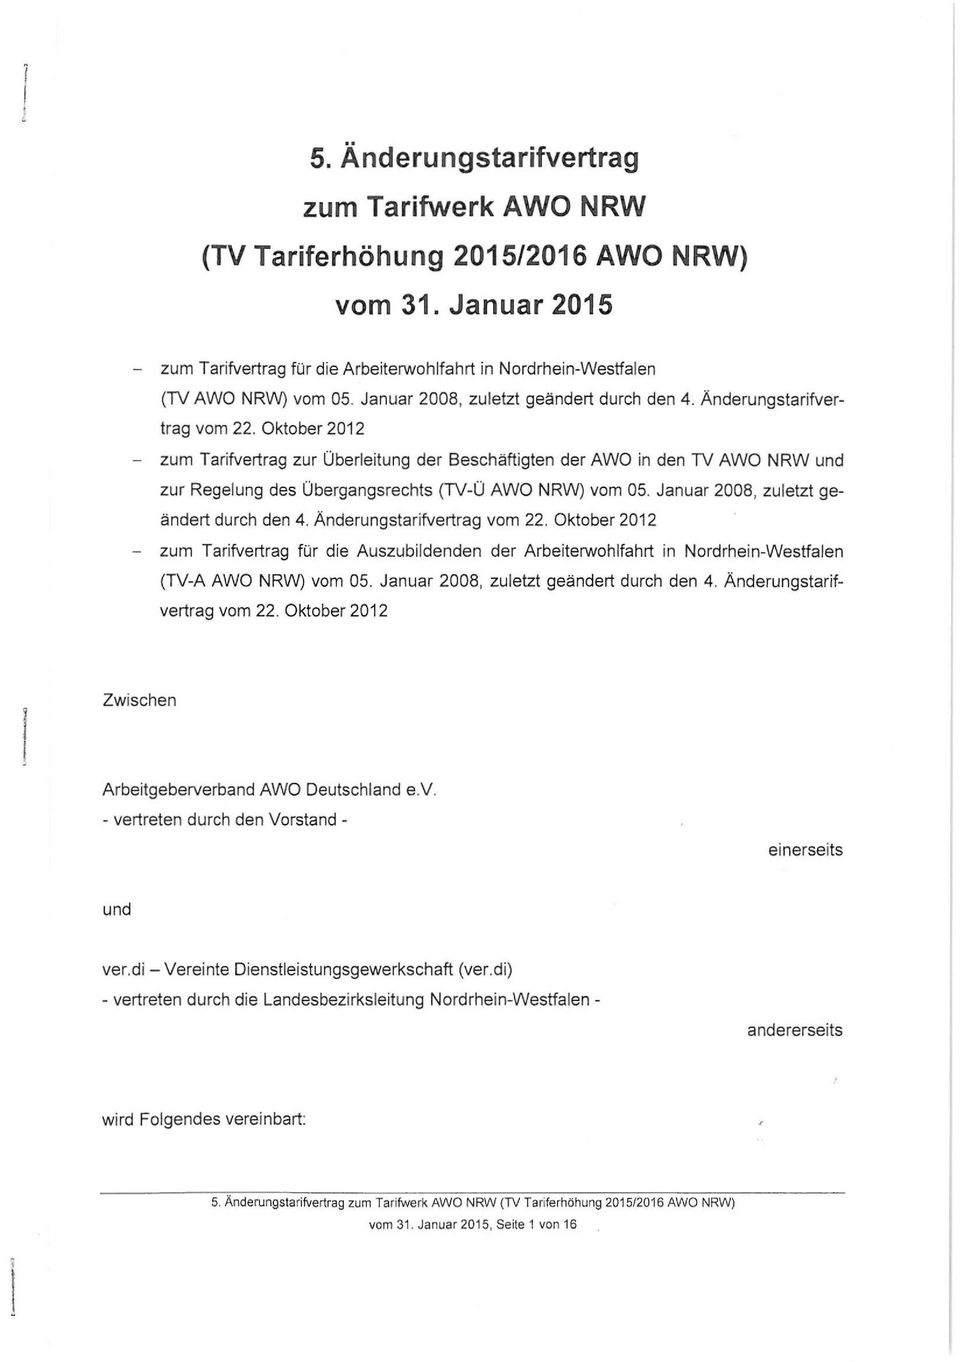 Oktober 2012 - zum Tarifvertrag zur Oberleitung der Beschäftigten der AWO in den TV AWO NRW und zur Regelung des Obergangsrechts (TV-O AWO NRW) vom 05. Januar 2008, zu letzt geändert durch den 4.